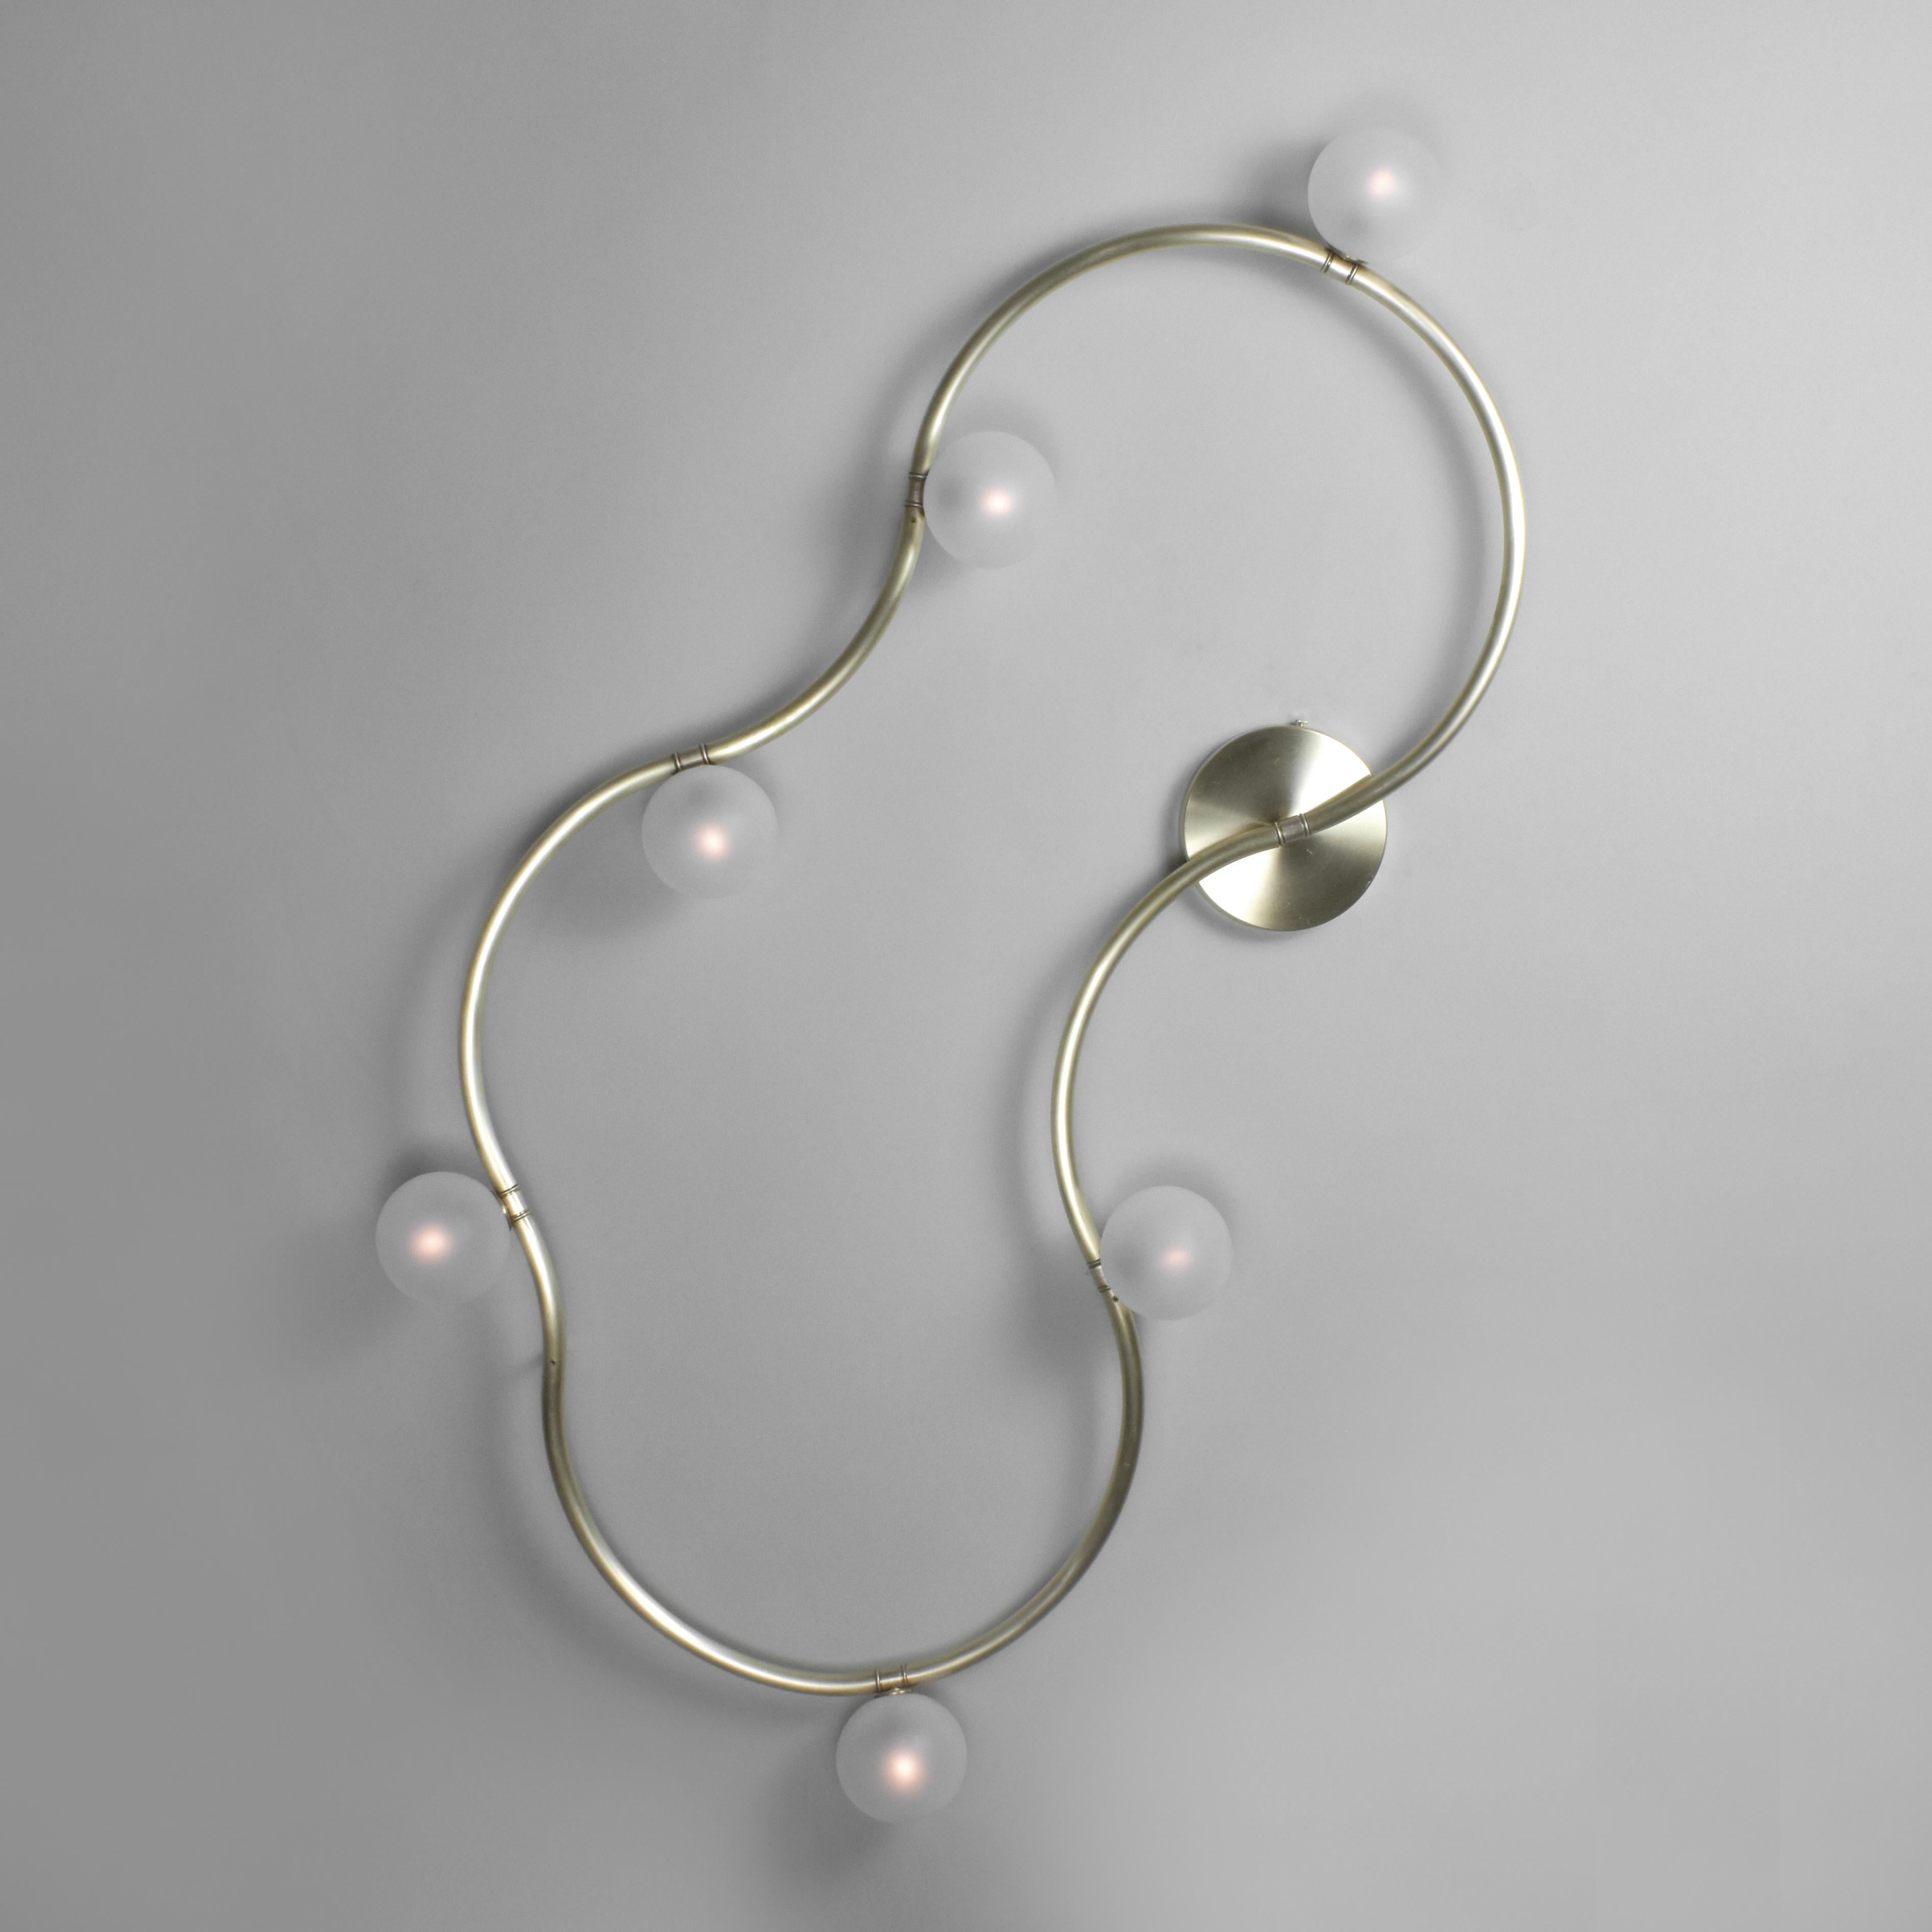 Modular Lighting conçu et produit par Talbot & Yoon.

Le Looping Light utilise un tube en laiton courbé et un motif de carrelage en diamant composé de deux formes uniques pour créer une variété infinie d'appliques murales en forme de boucle et de